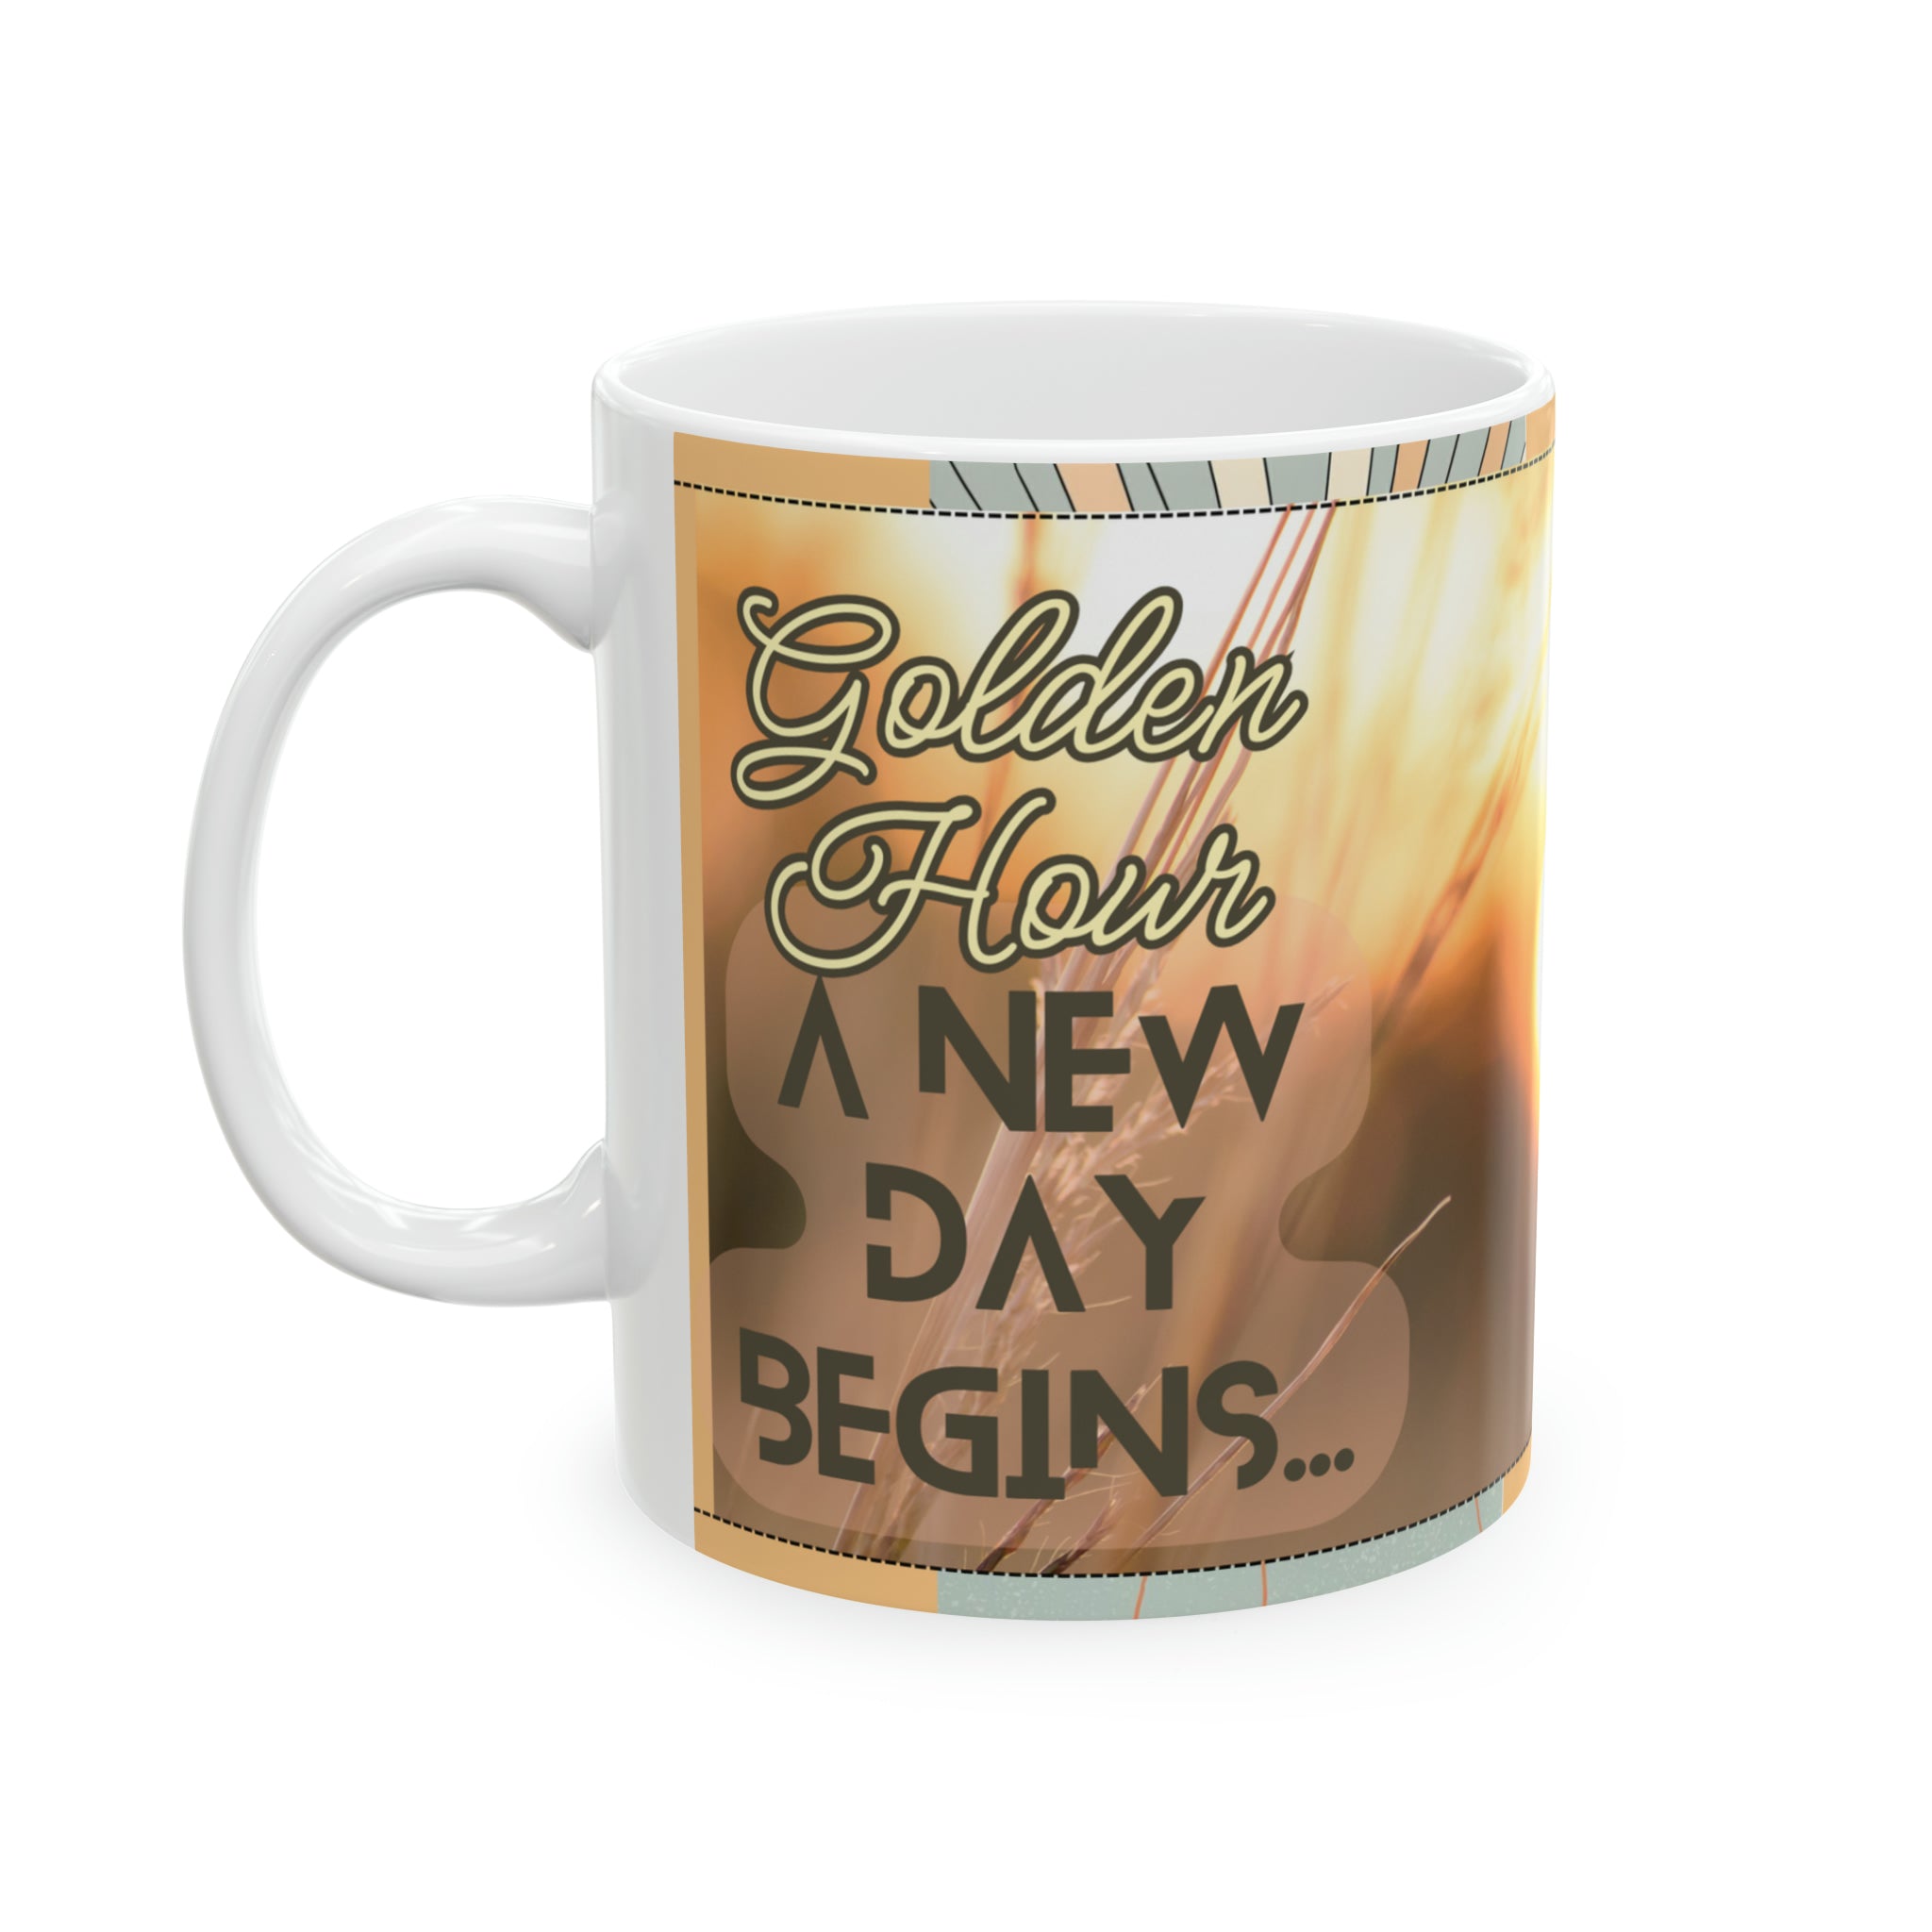 Golden Hour:  A new Day - Ceramic Mug, 11oz